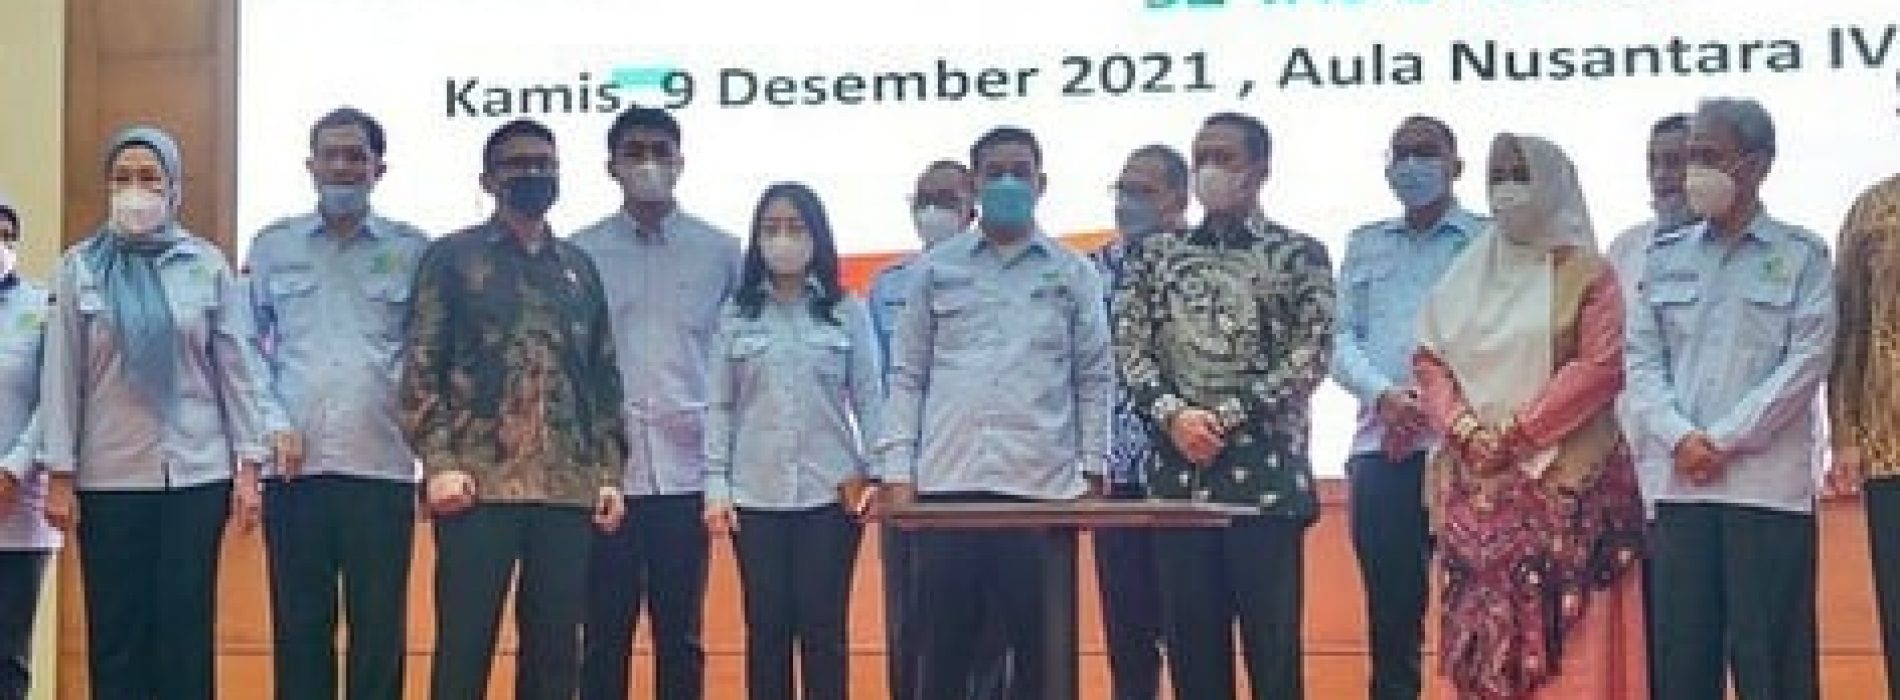 Bambang Soesatyo dan Fahira Idris hadir Pelantikan KOMINDO Sejahtera sekaligus Ketua MPR RI Sosialisasi 4 Pilar MPR RI ‘Ekonomi Pancasila Menjadi Solusi di Masa Pandemi’